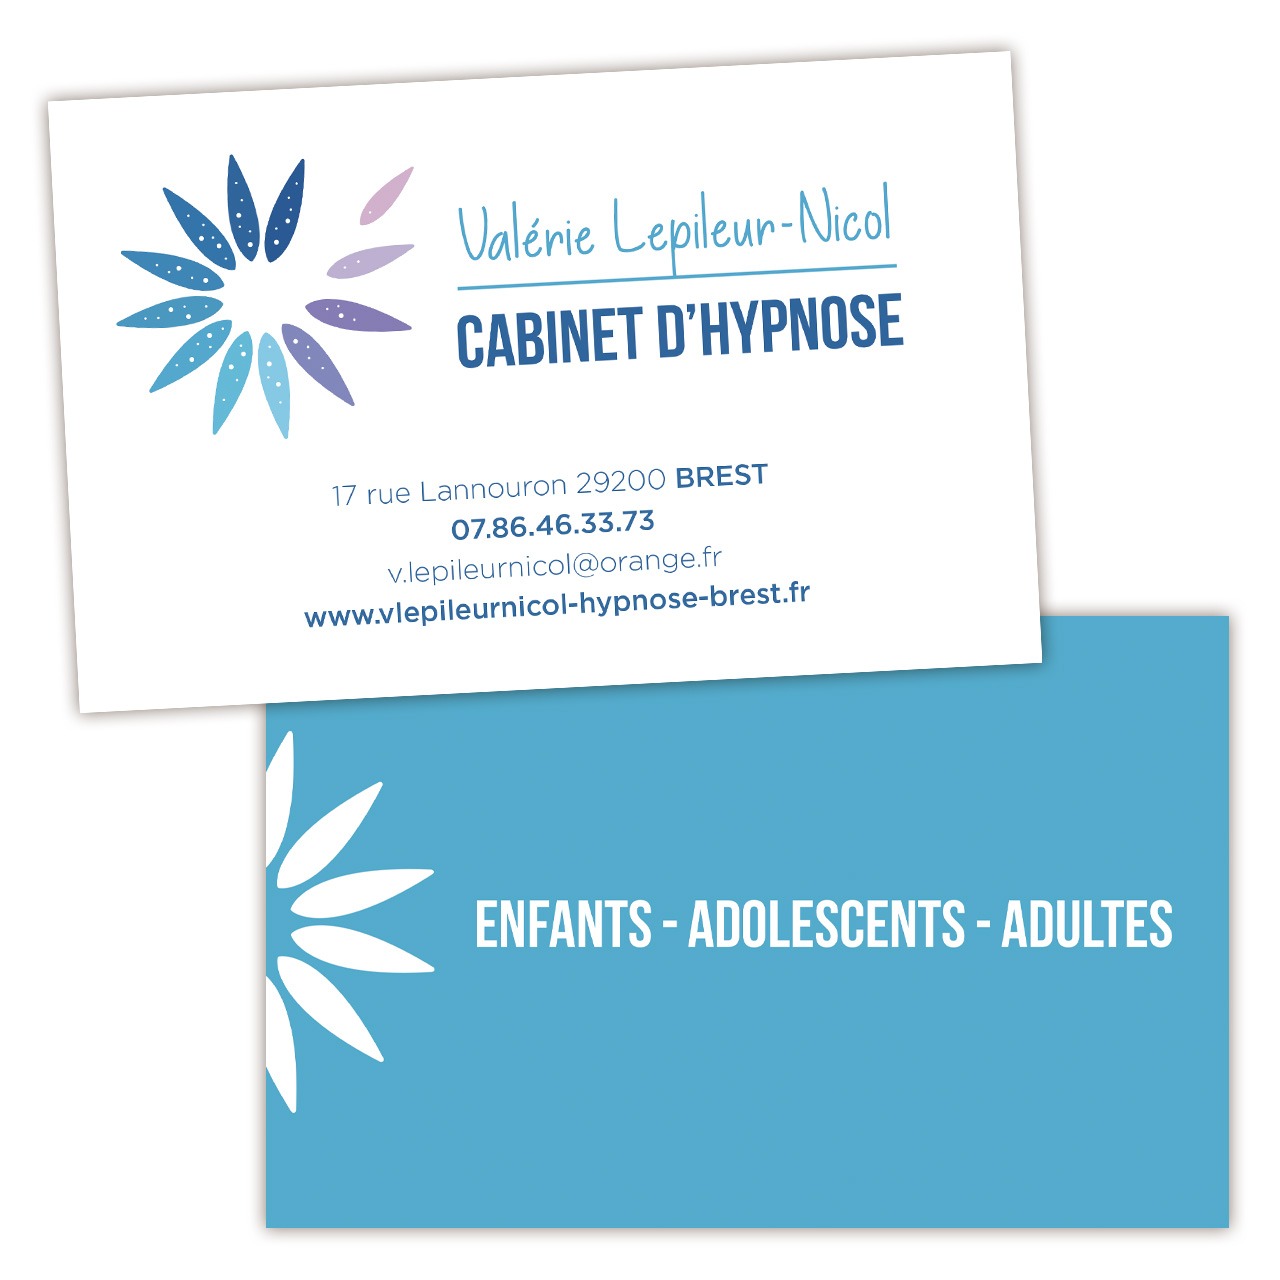 Valérie Lepileur-Nicol, cabinet d'hypnose, logo, identité visuelle, charte graphique, carte de visite